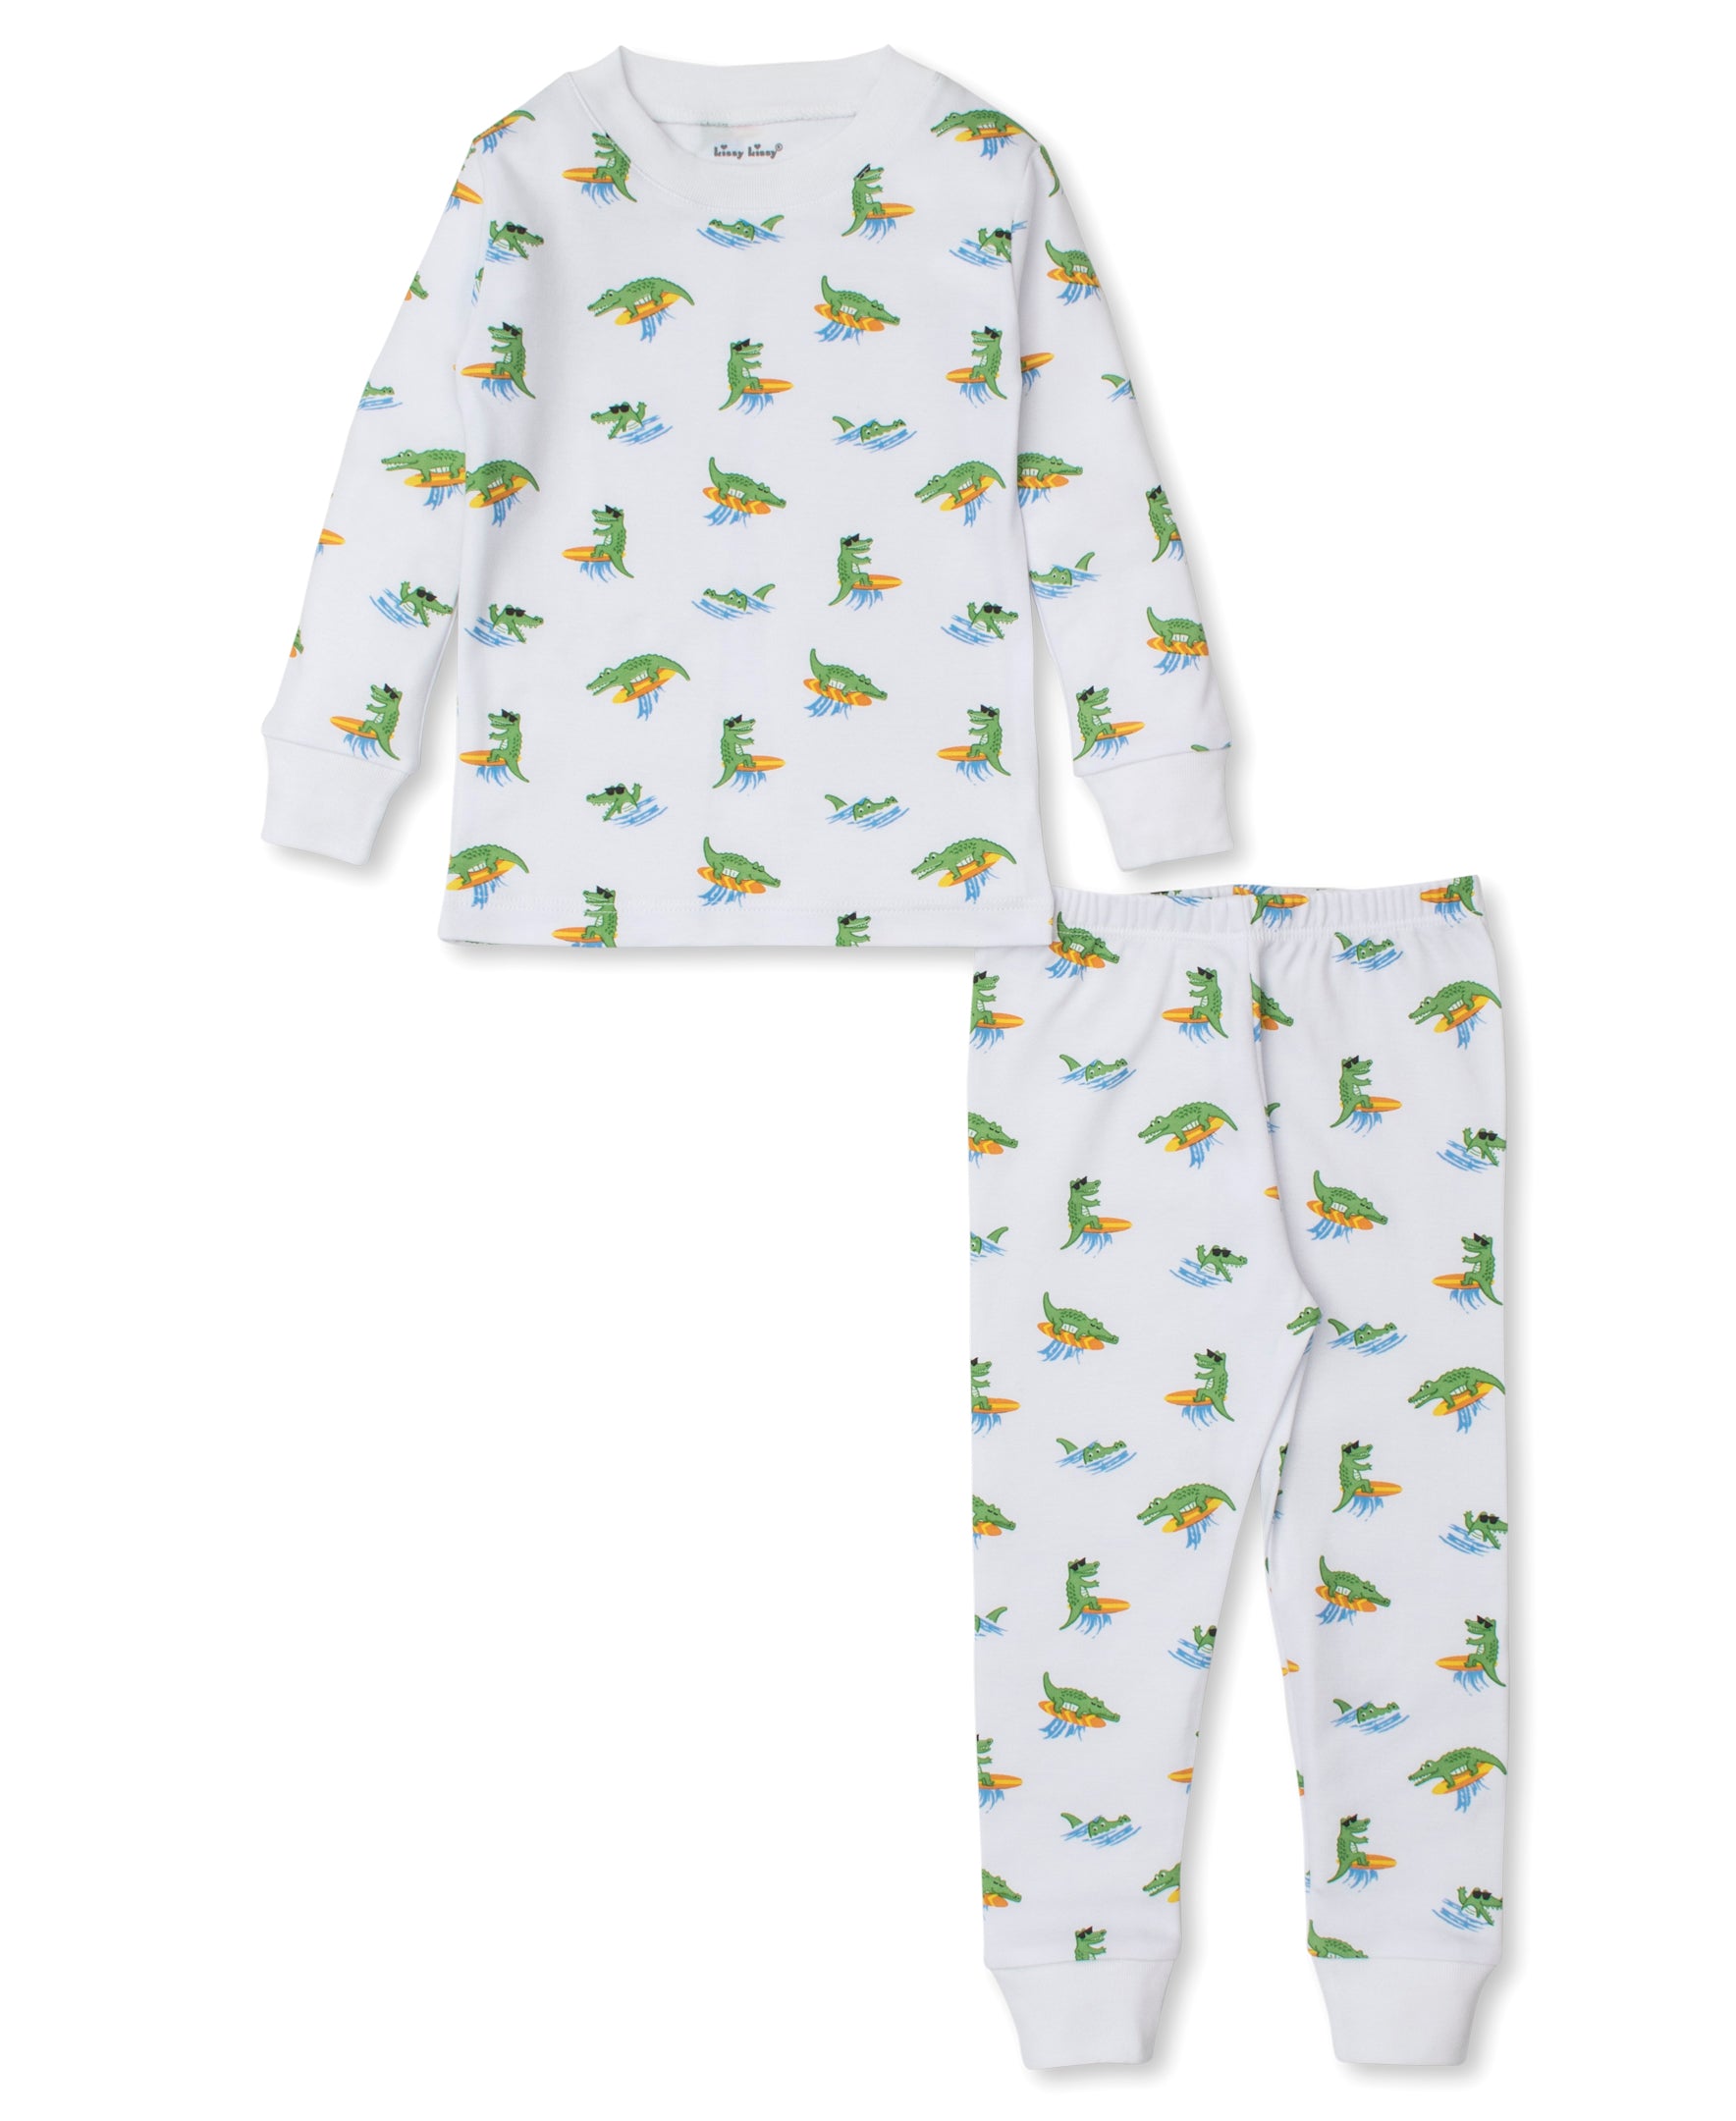 Crocodile Capers Toddler Pajama Set - Kissy Kissy